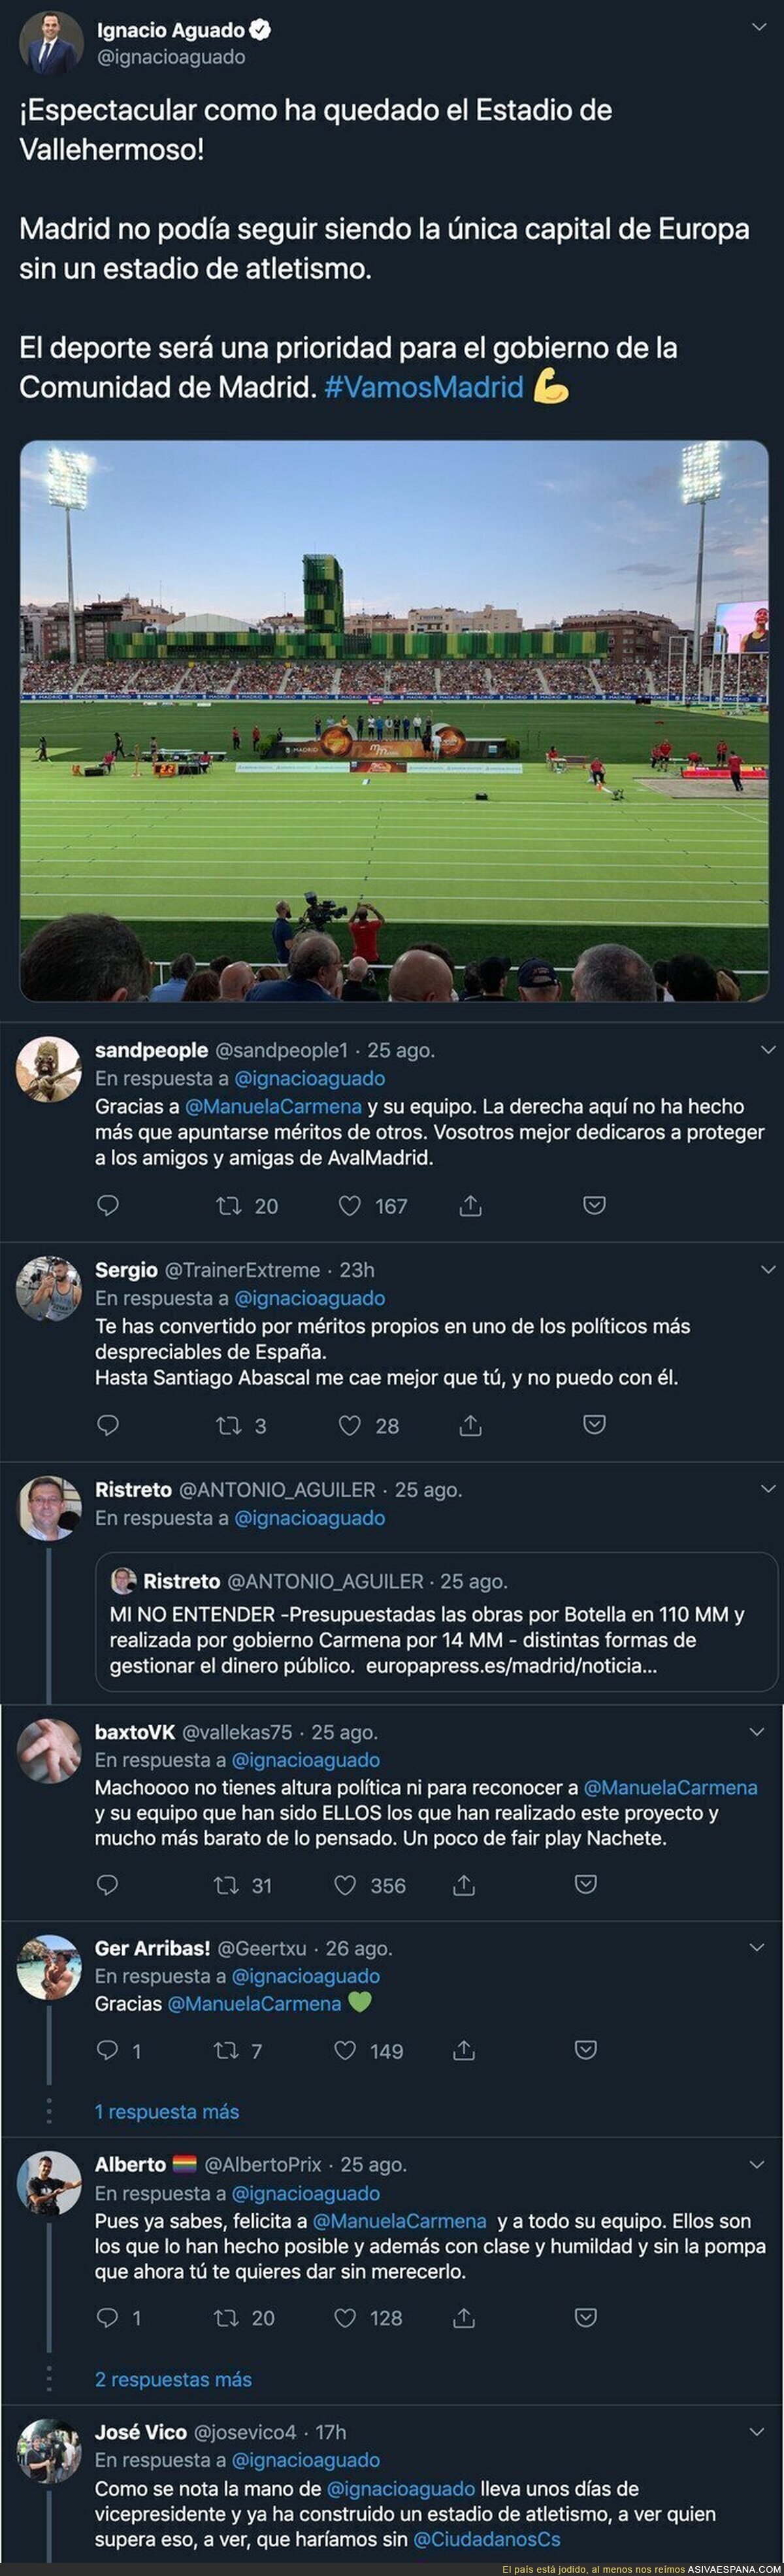 Ignacio Aguado se alegra de como ha quedado el estadio de atletismo en Madrid sin mencionar a Manuela Carmena